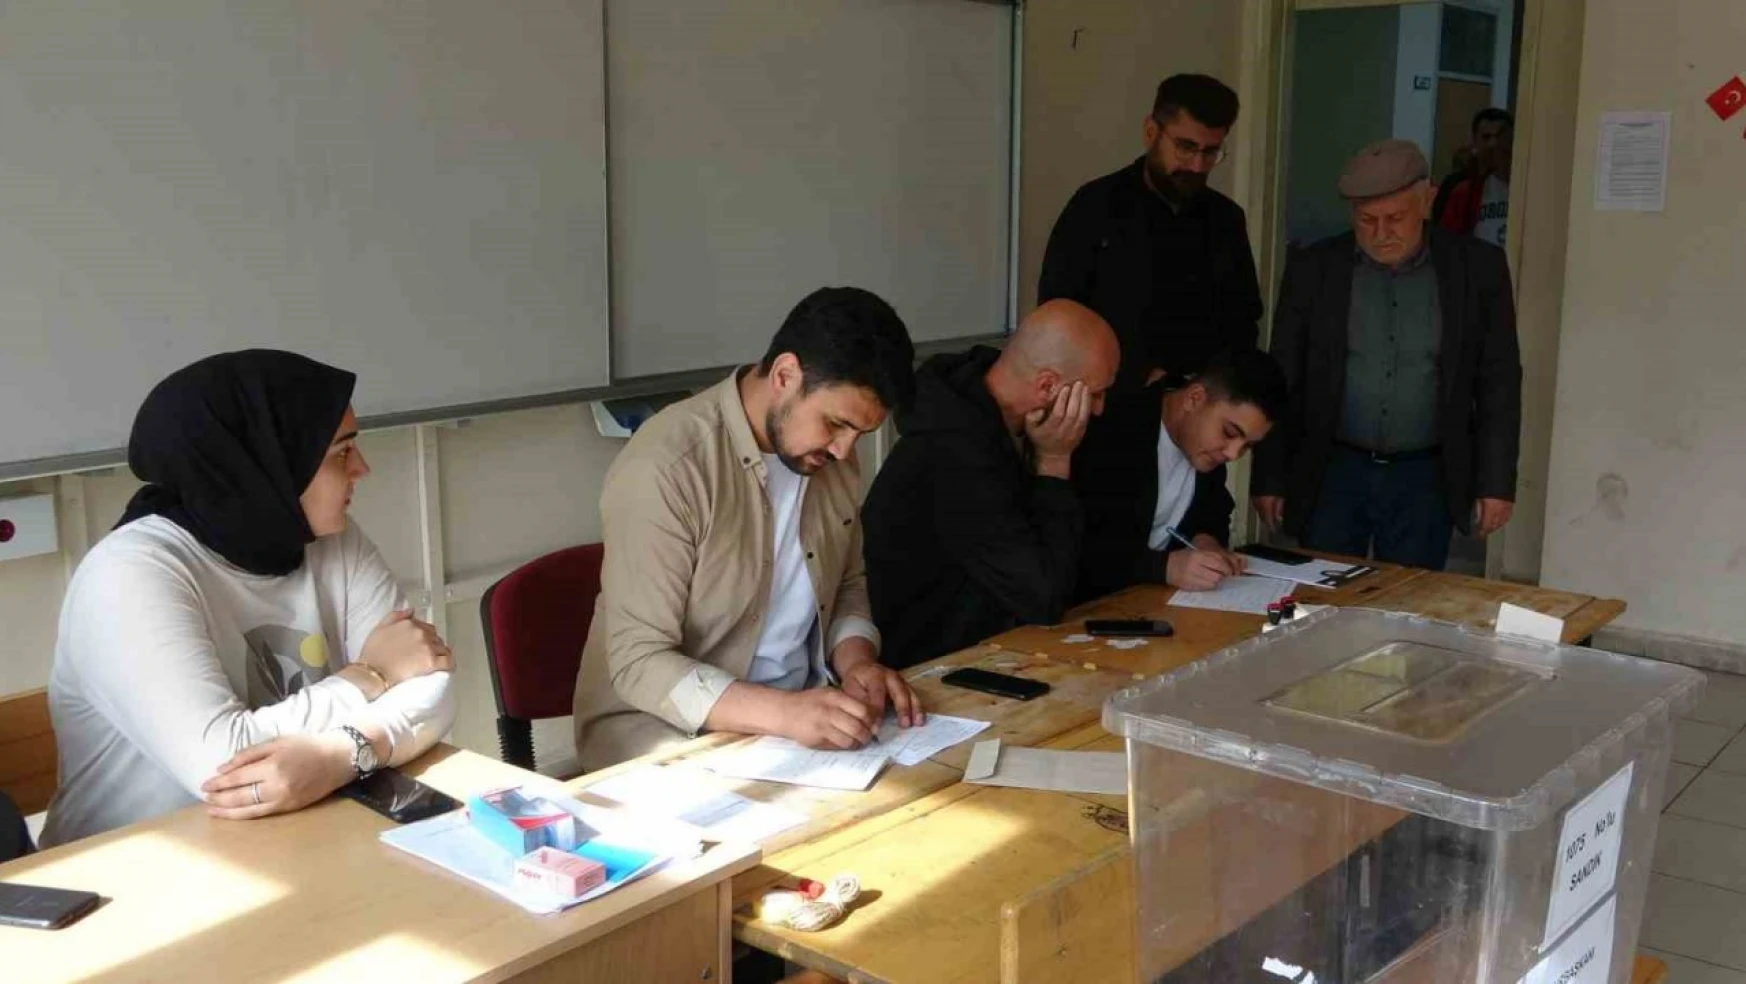 Van'da ikinci tur Cumhurbaşkanlığı seçimleri için oy verme işlemi başladı